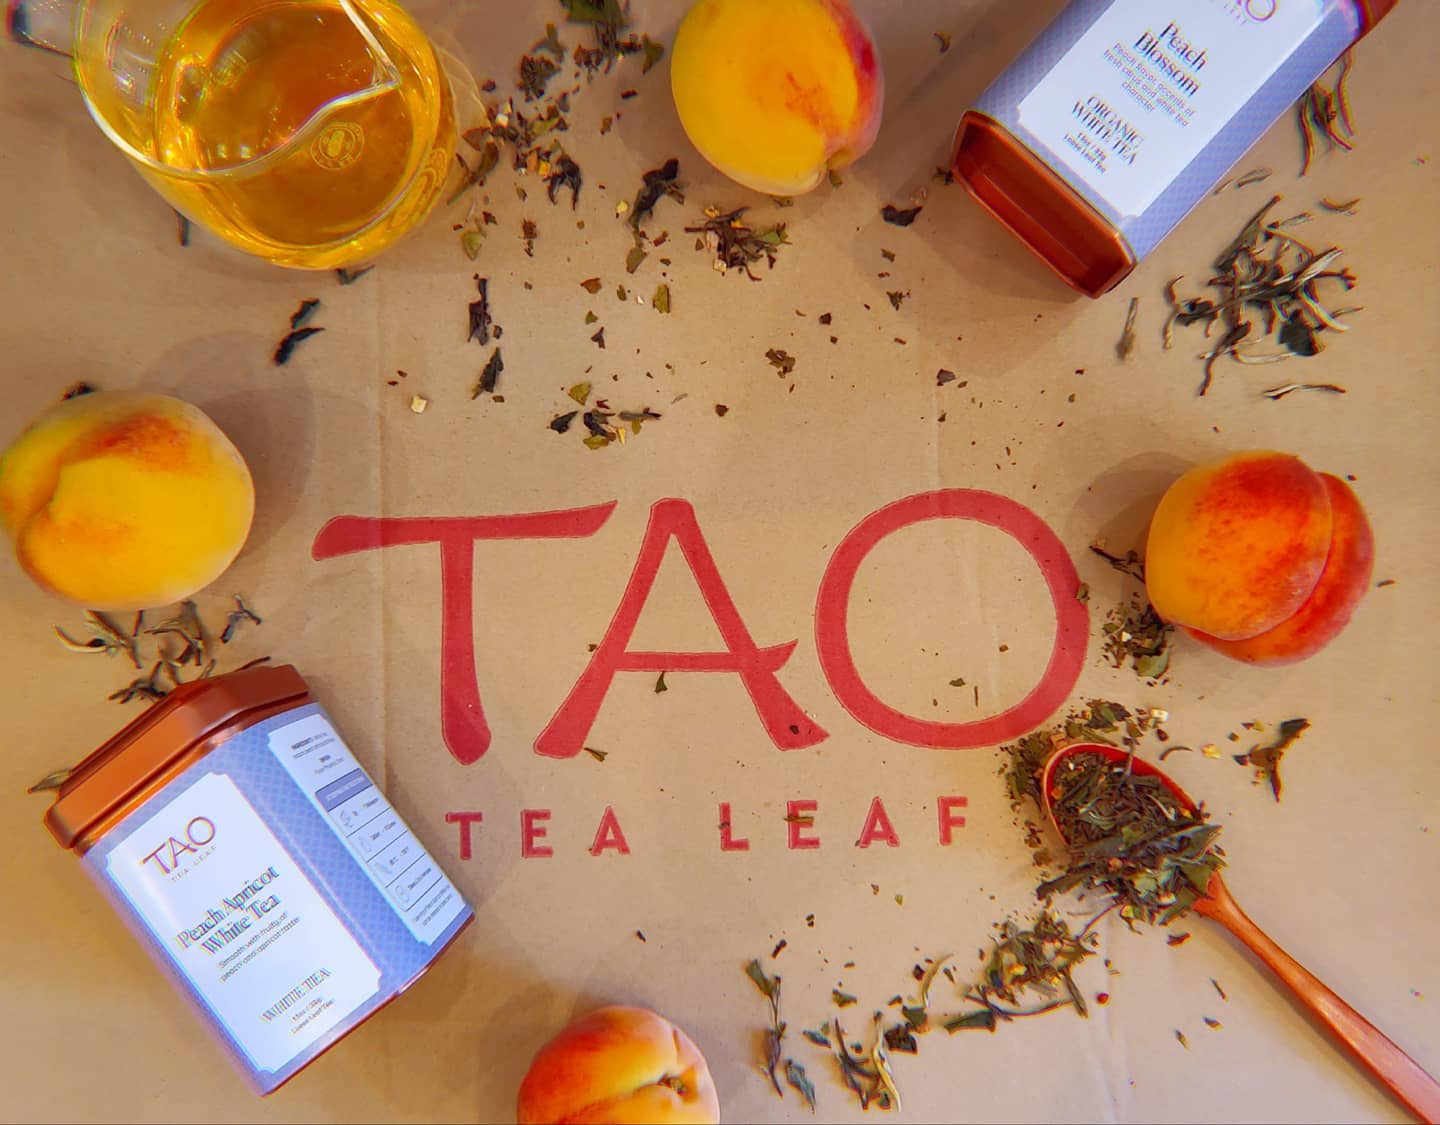 Tao Tea Leaf - Mississauga